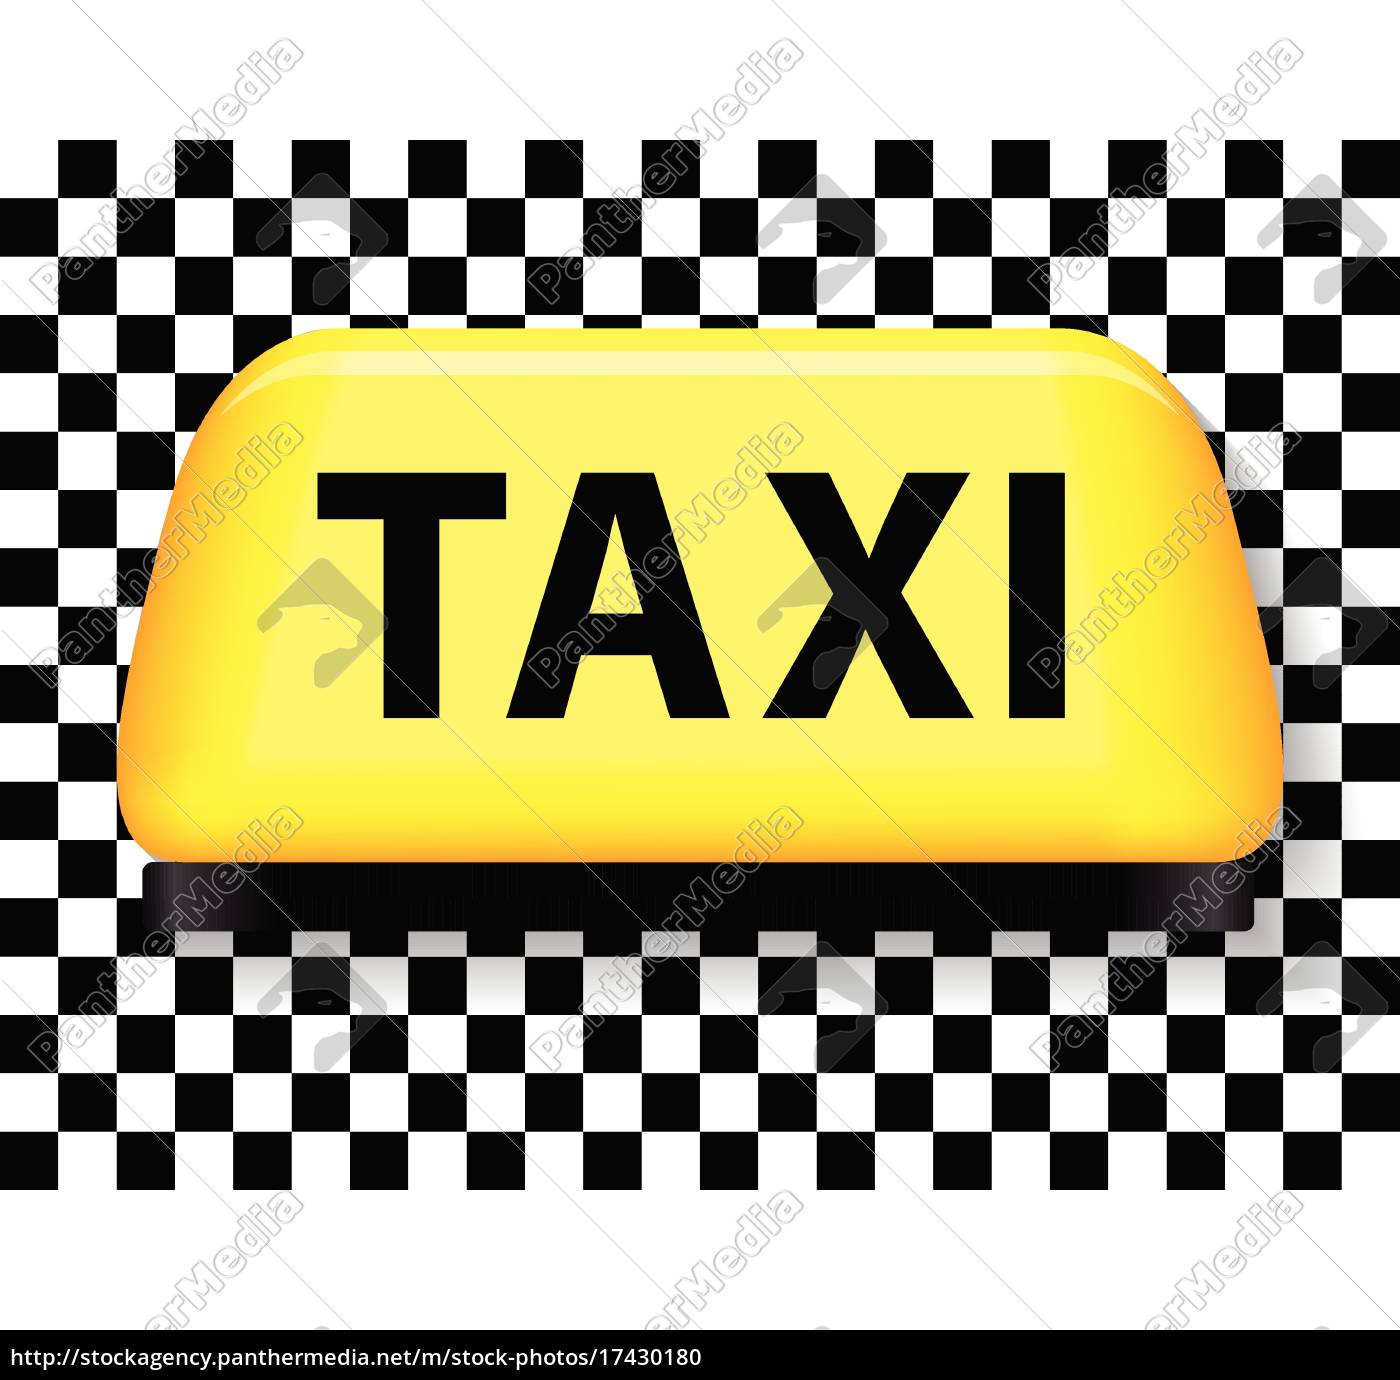 Señal de taxi con fondo a cuadros - Stockphoto #17430180